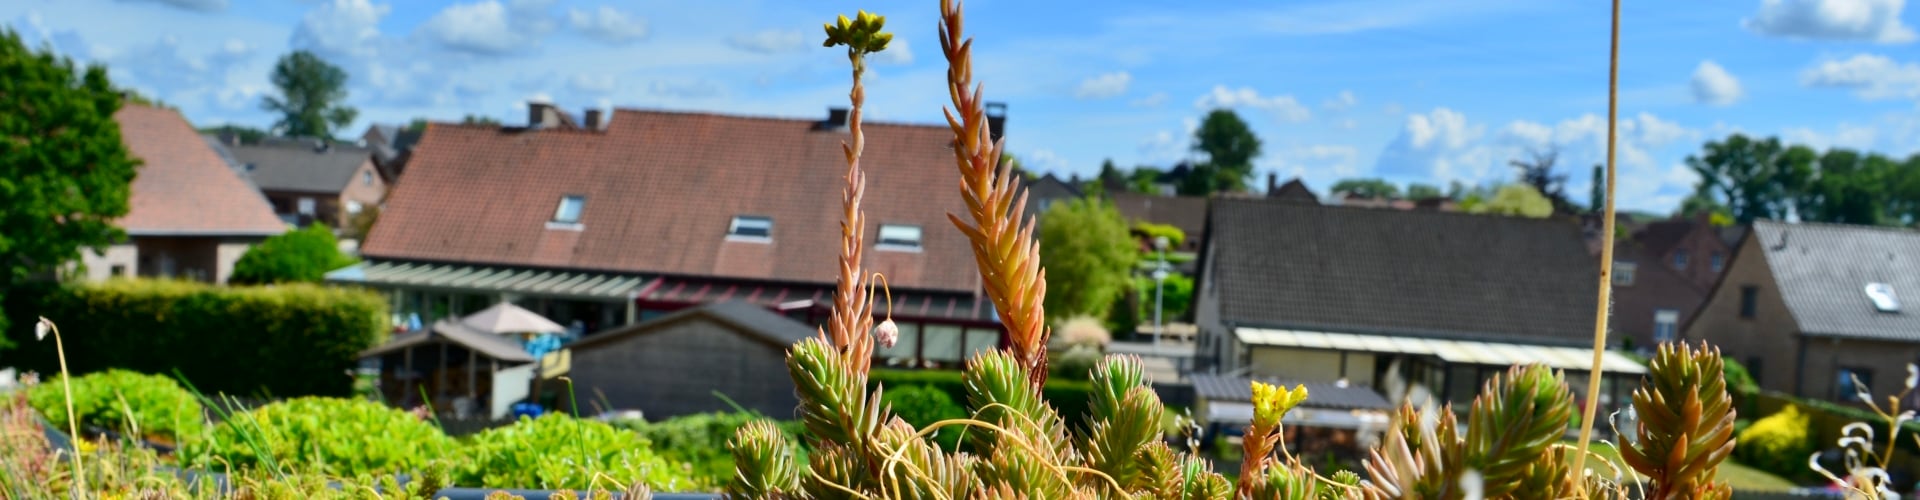 Sedum reflexum in bloei met heldere lucht en daken op de achtergrond